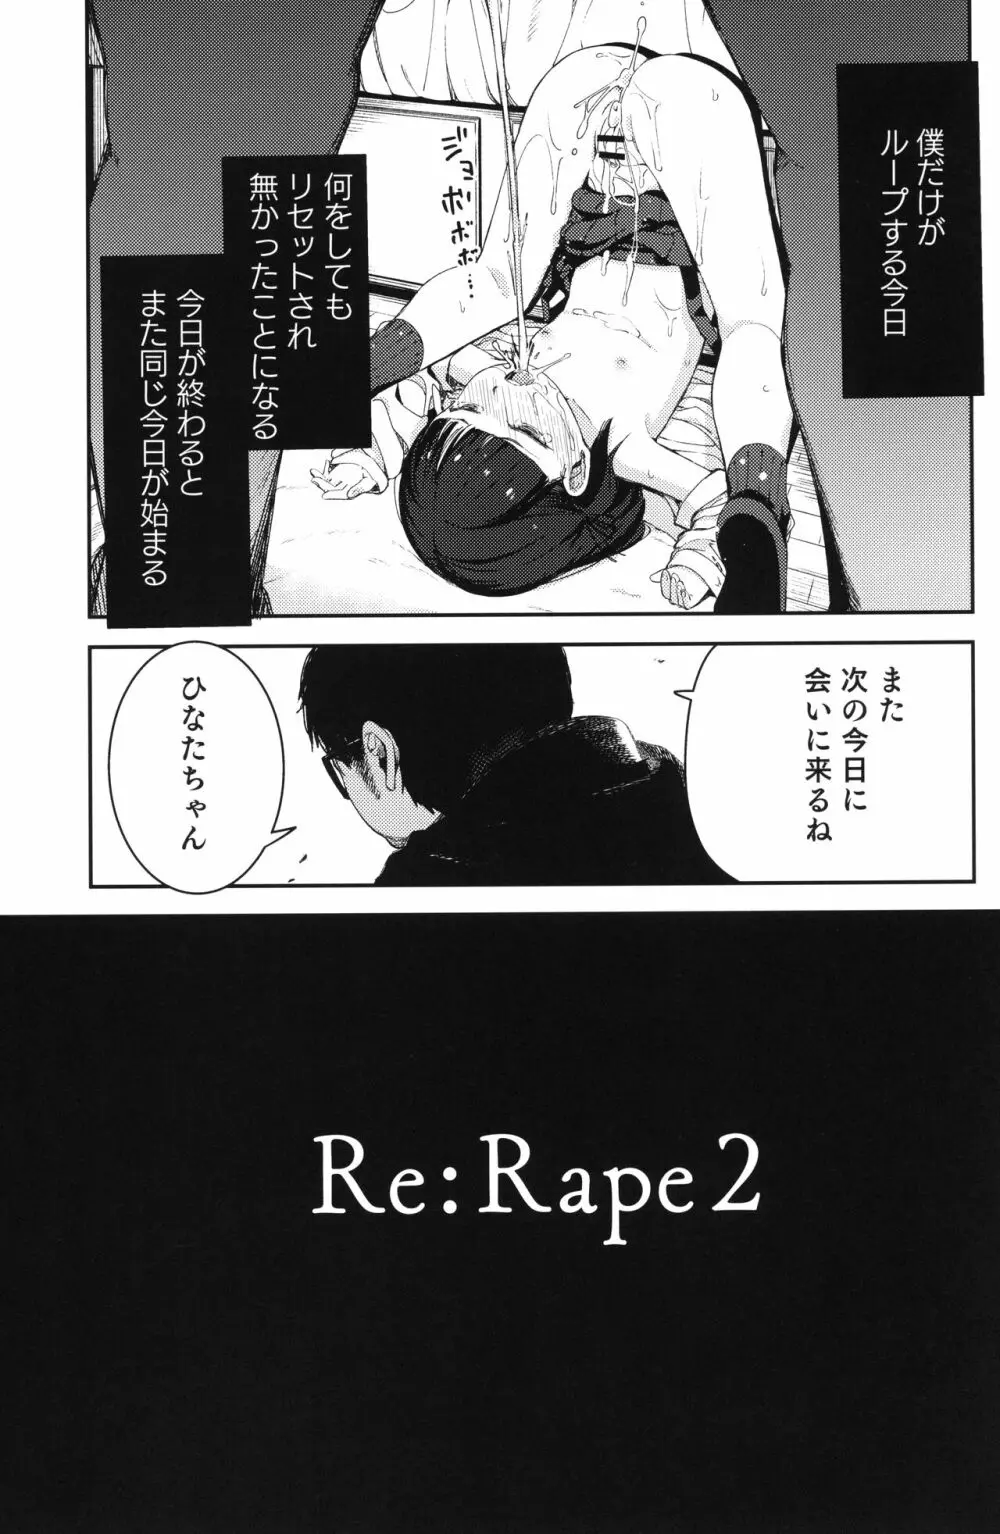 Rape 2 14ページ